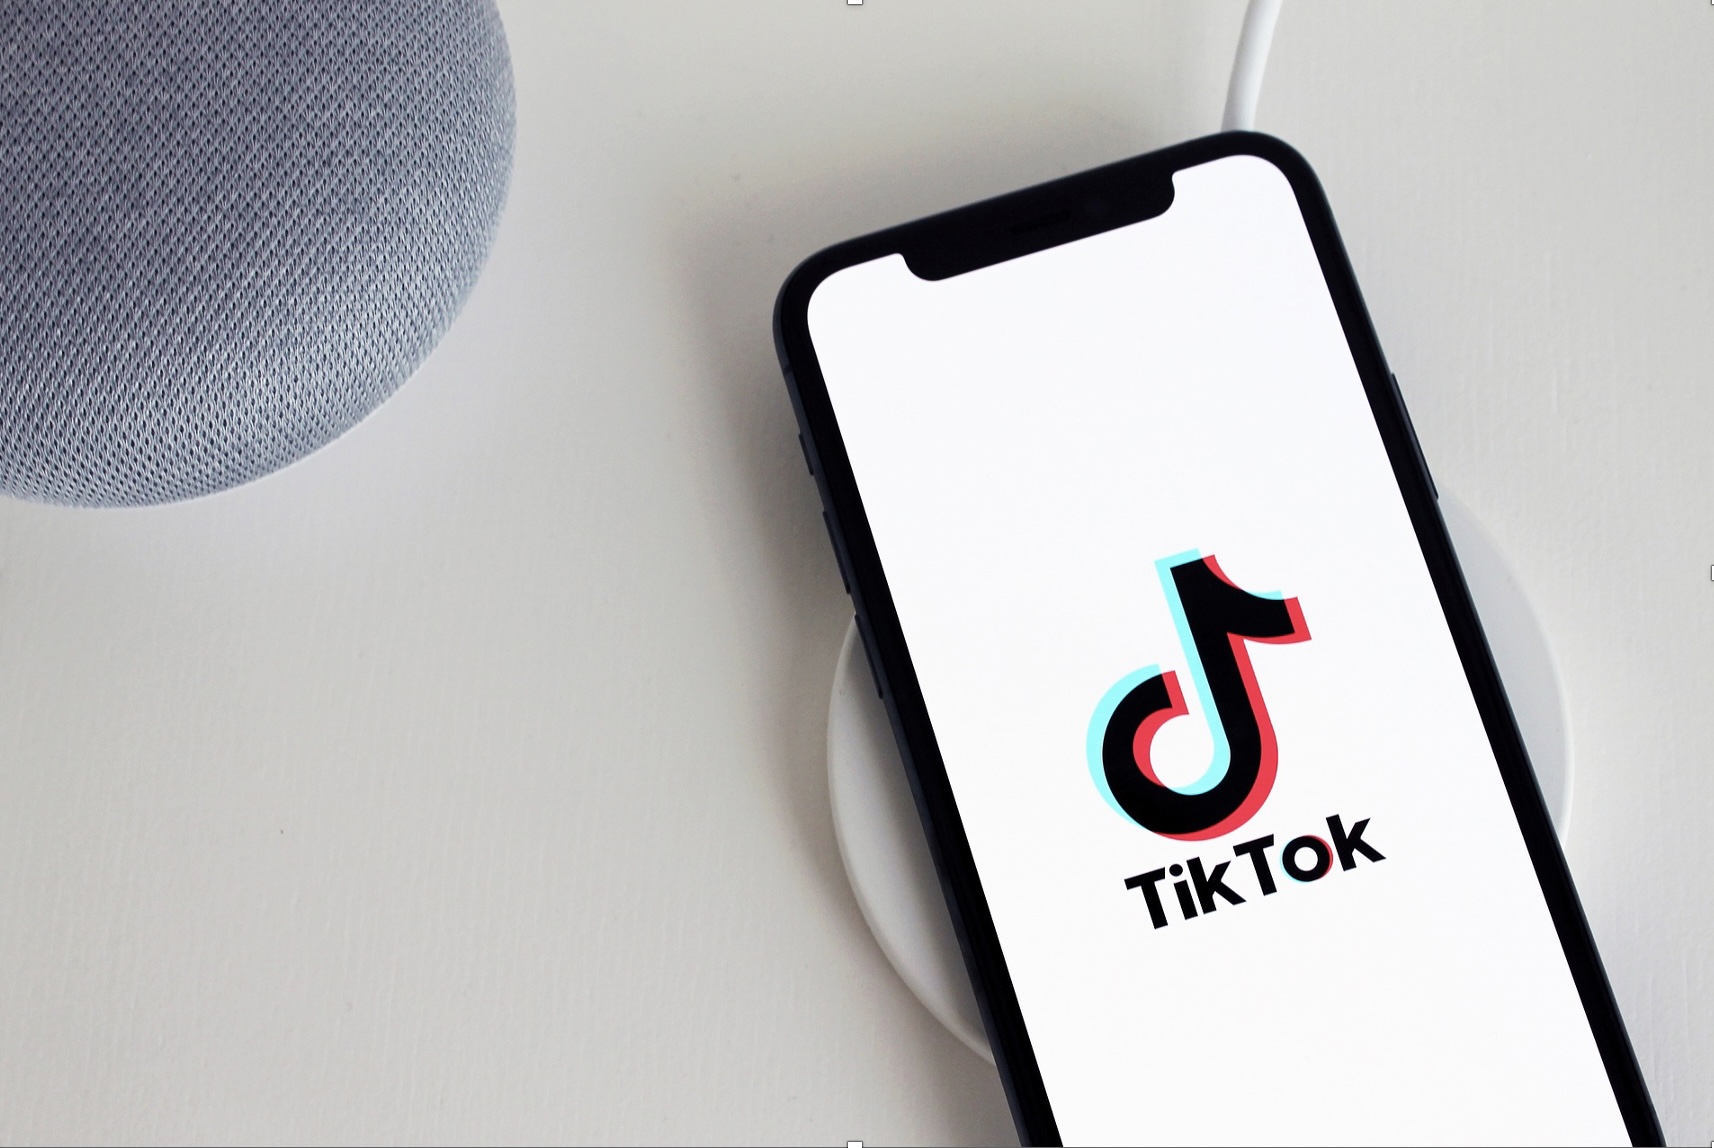 Baixar vídeos do TikTok de forma fácil, rápida e grátis 4